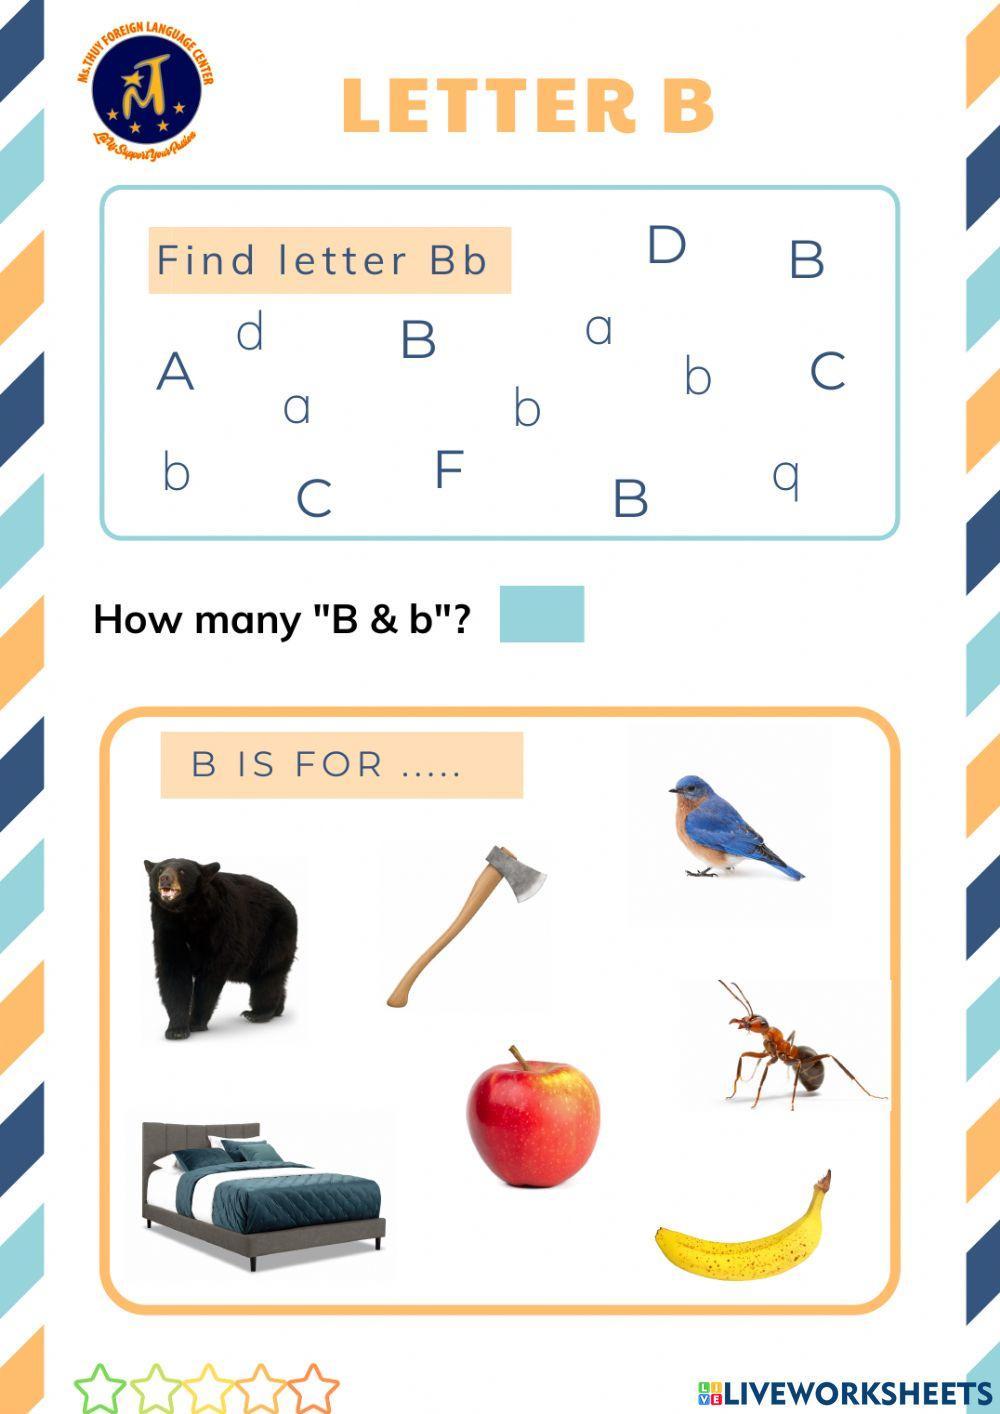 Find Letter Bb